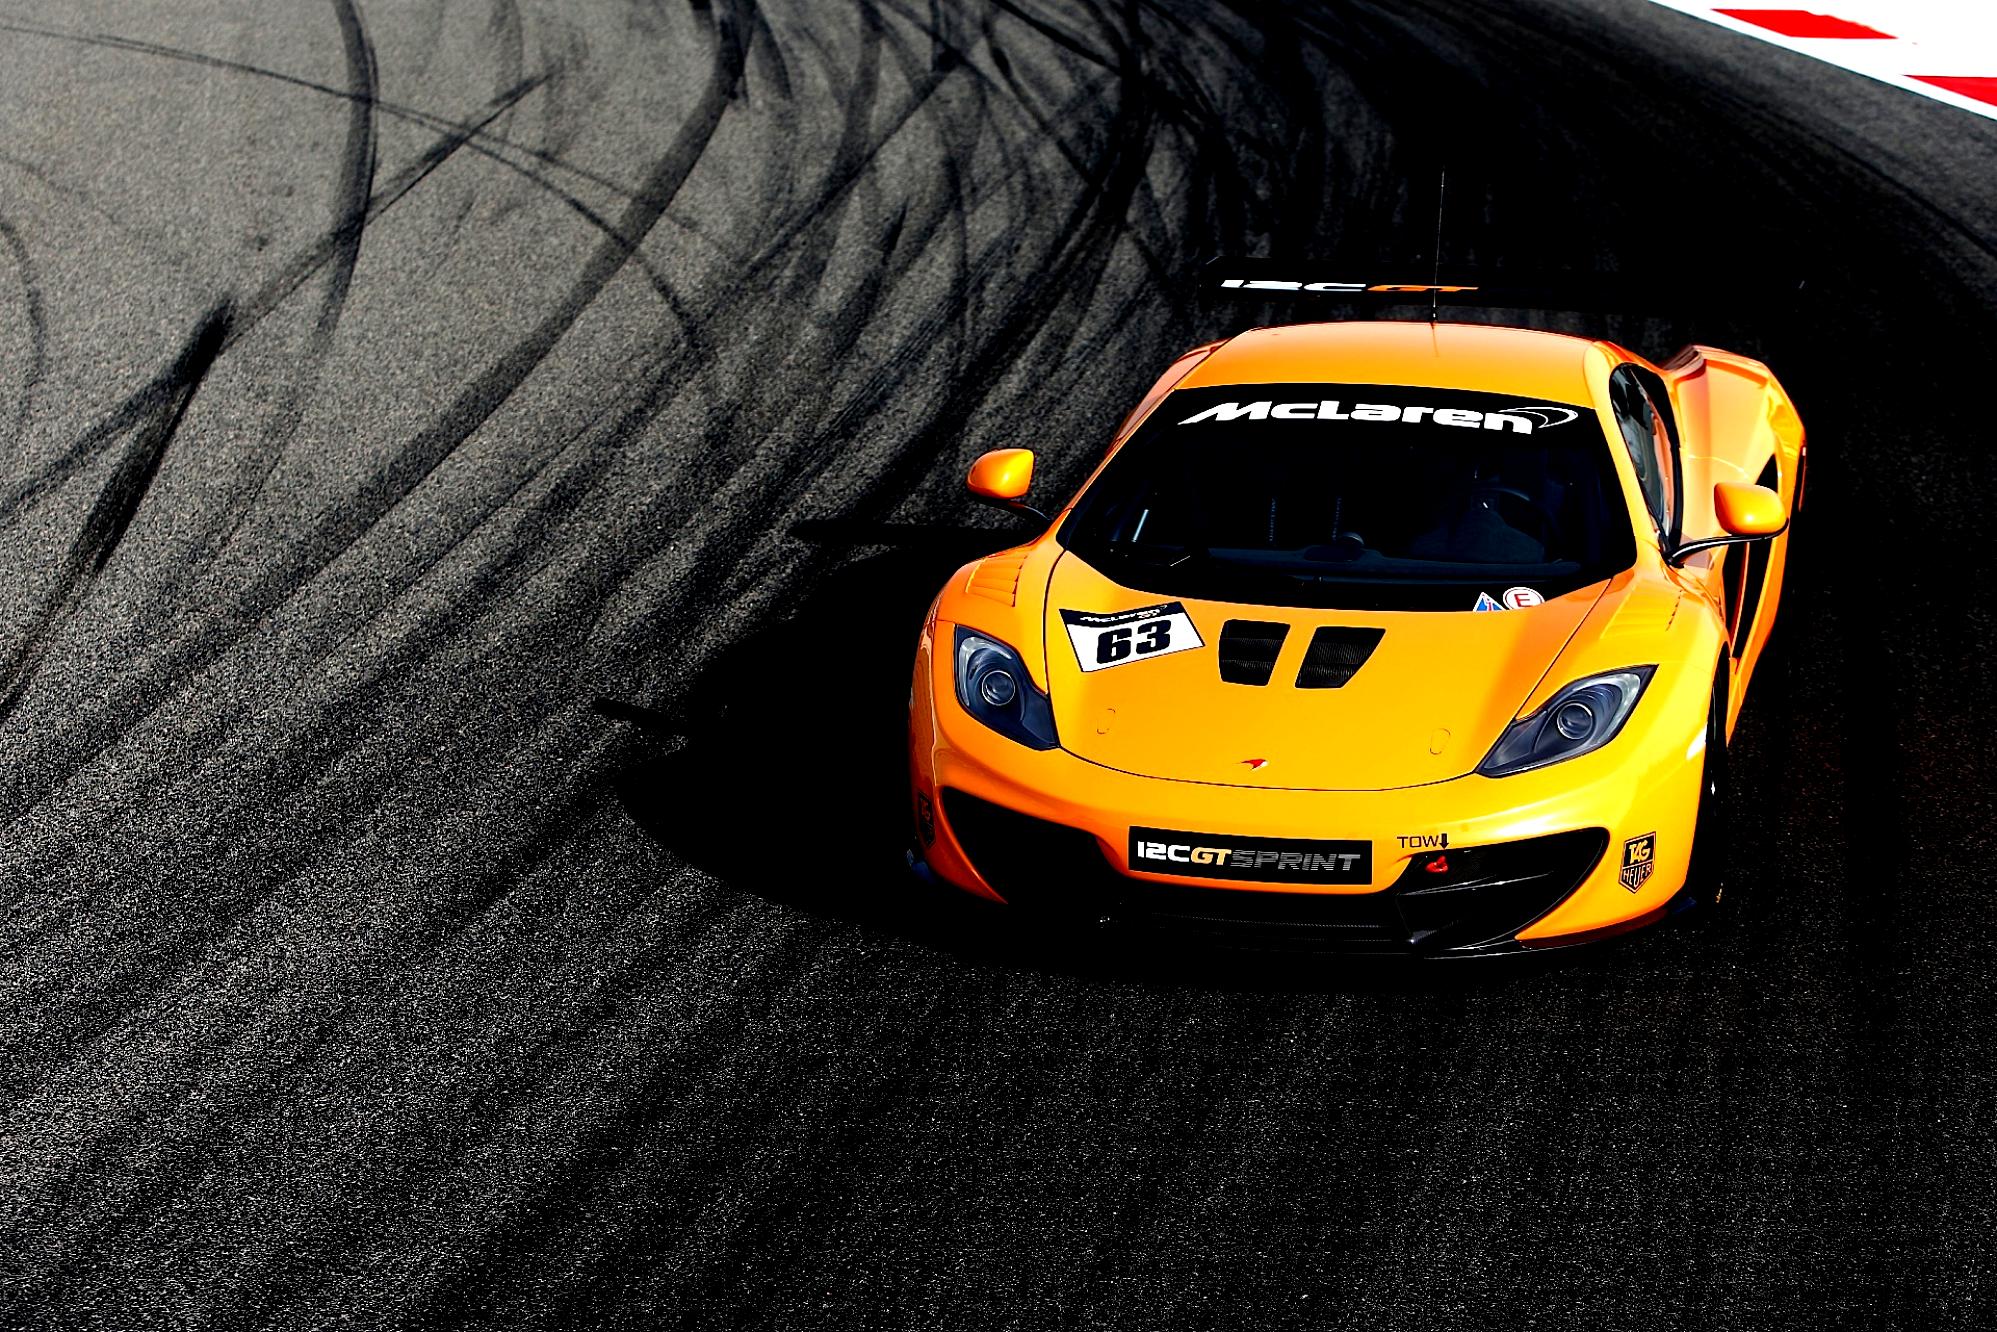 Mclaren 12C GT Sprint 2013 #3